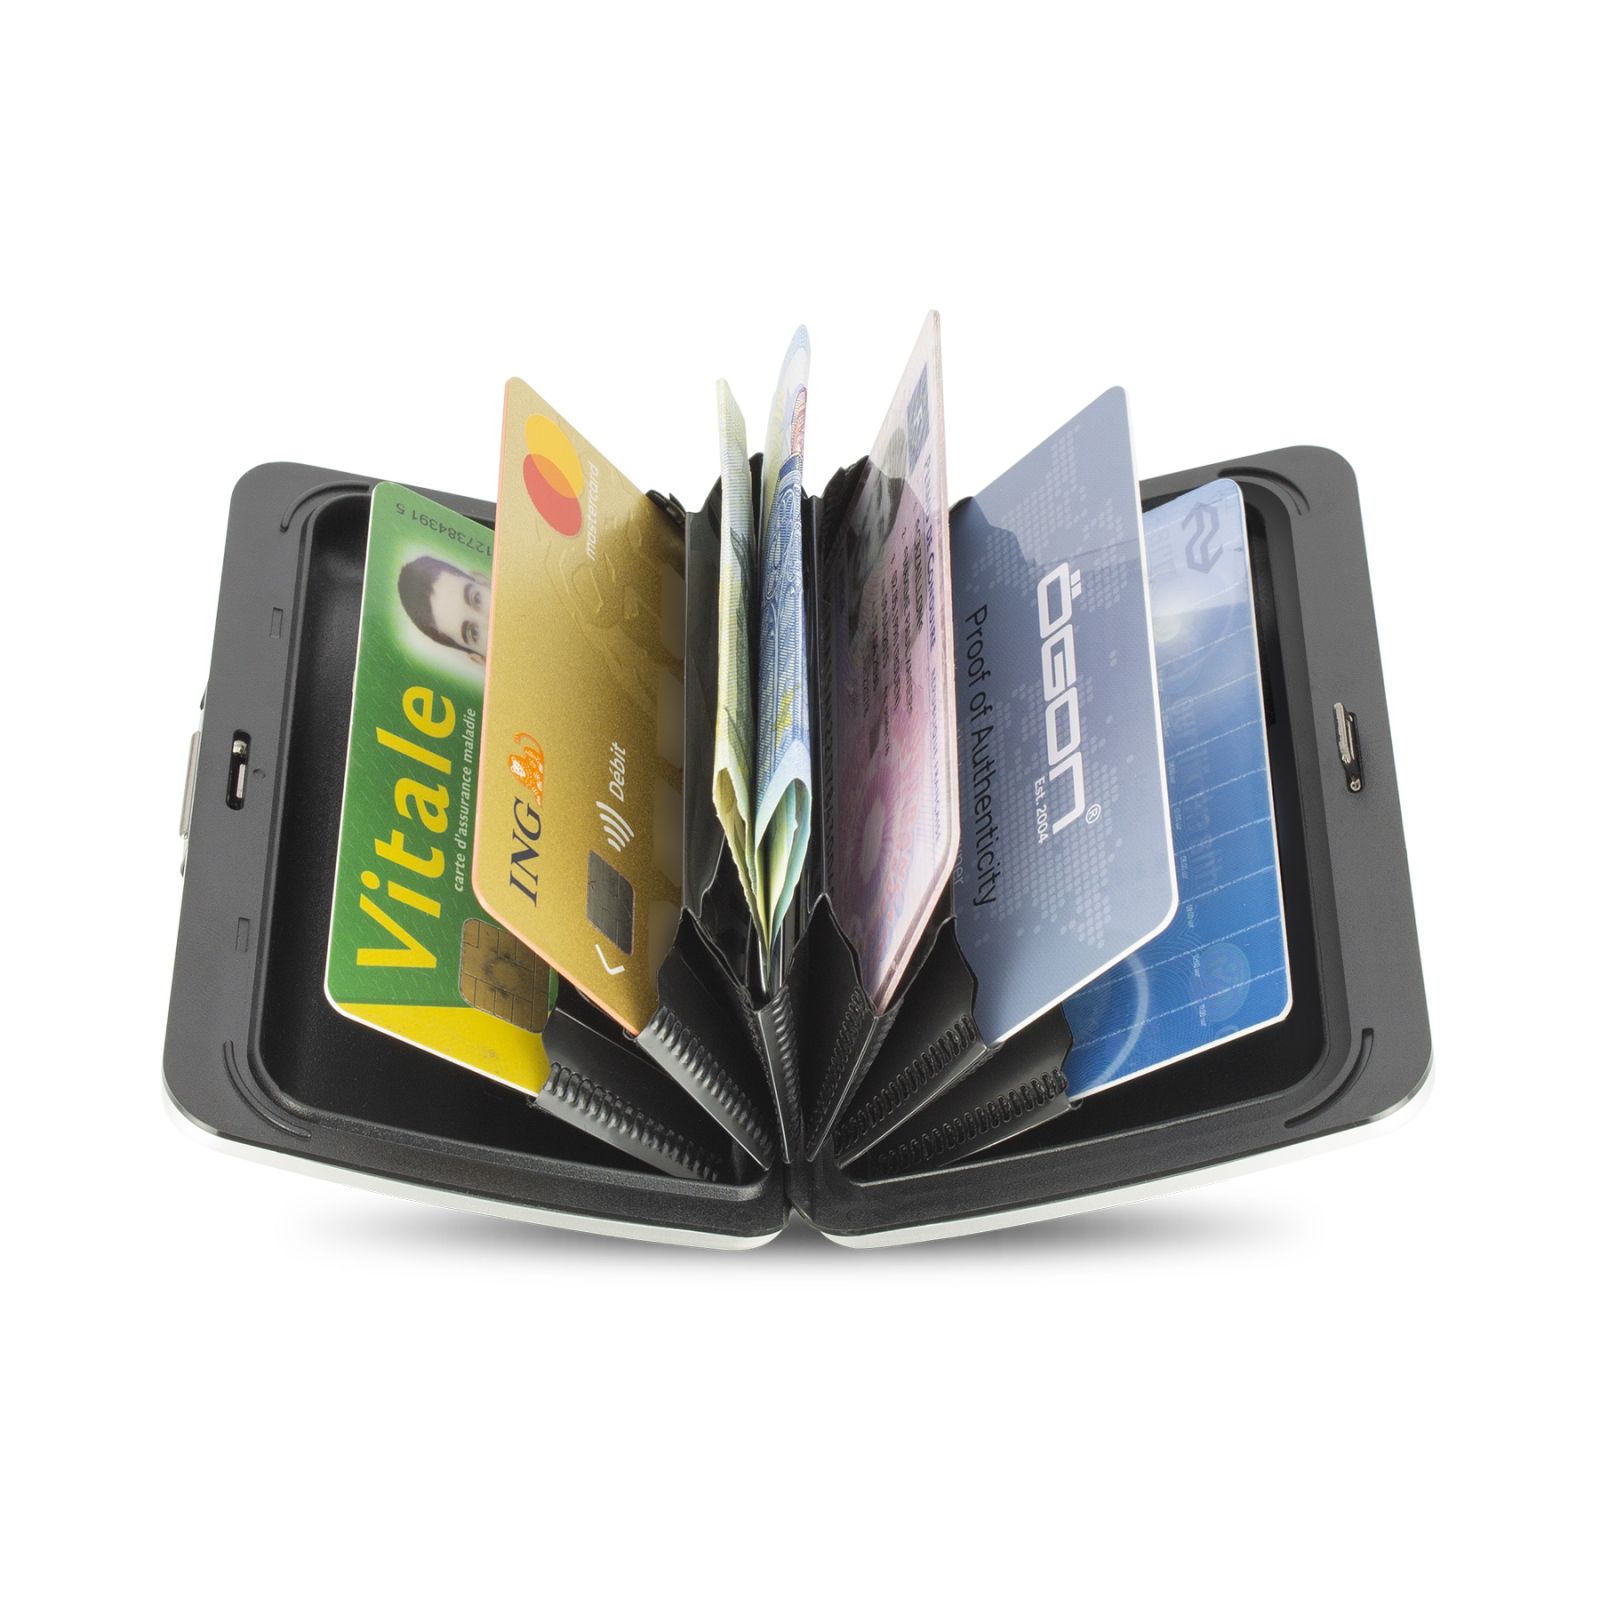 OGON Aluminum Wallet Smart Case V2.0 - Red